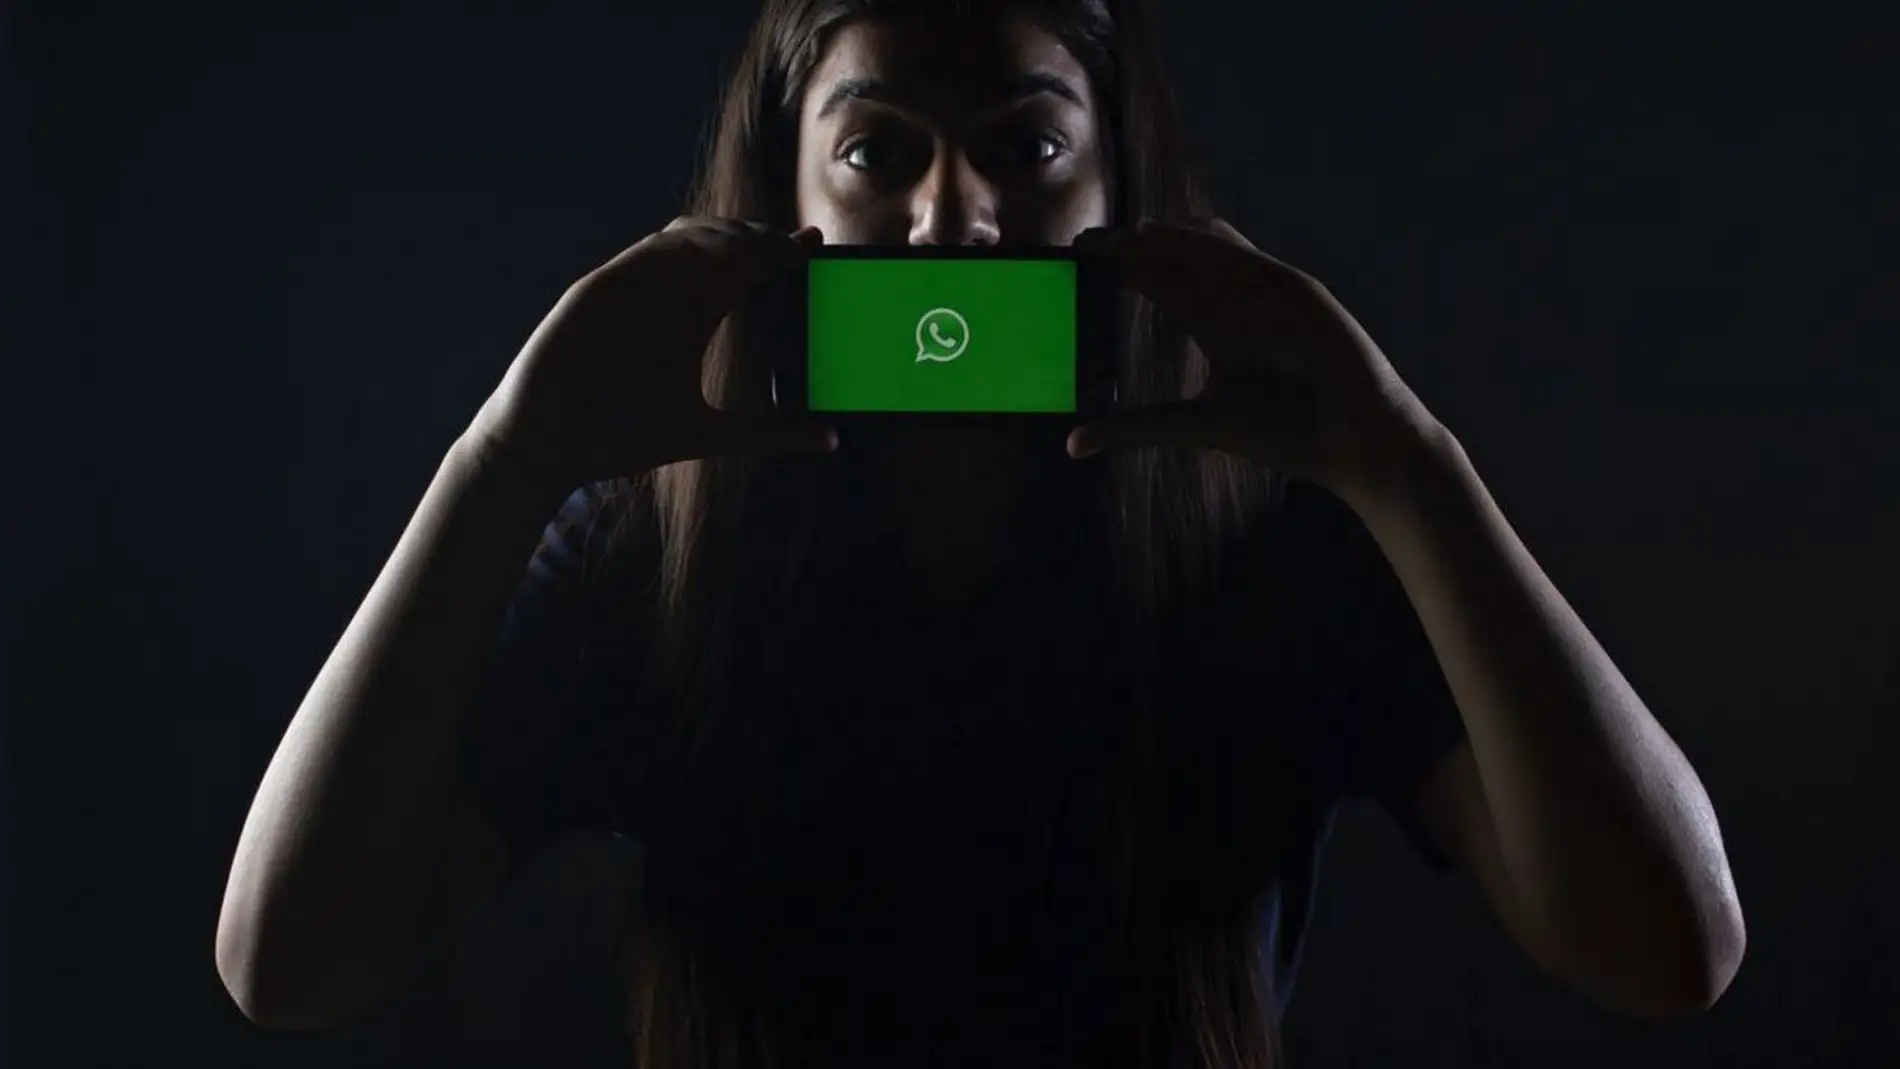 WhatsApp te sugerirá contactos con los que chatear en su plataforma